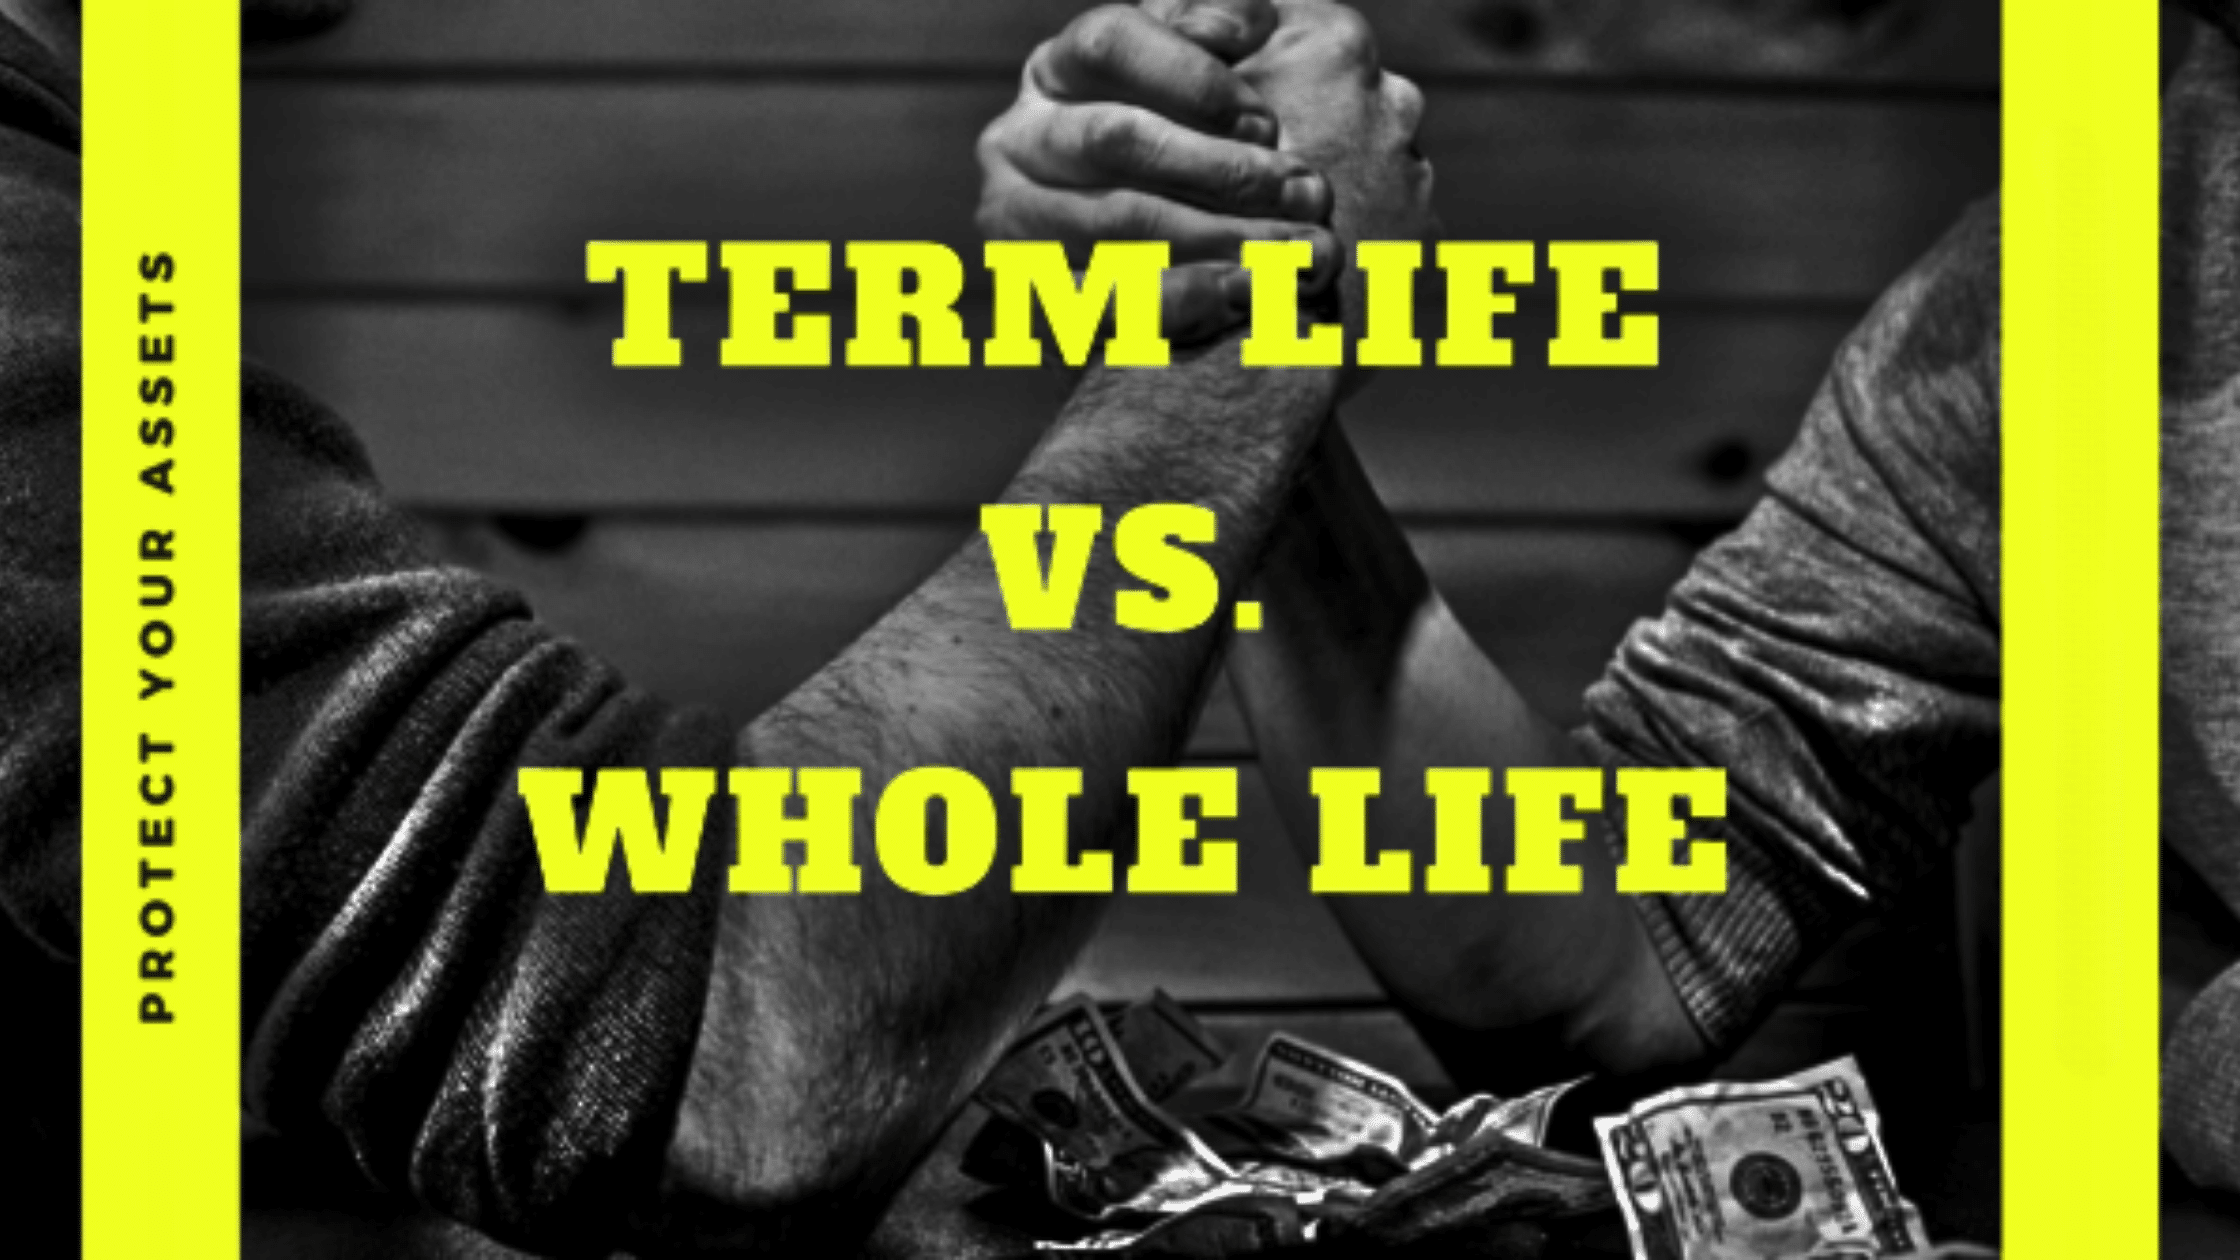 Term Life vs Whole Life Insurance